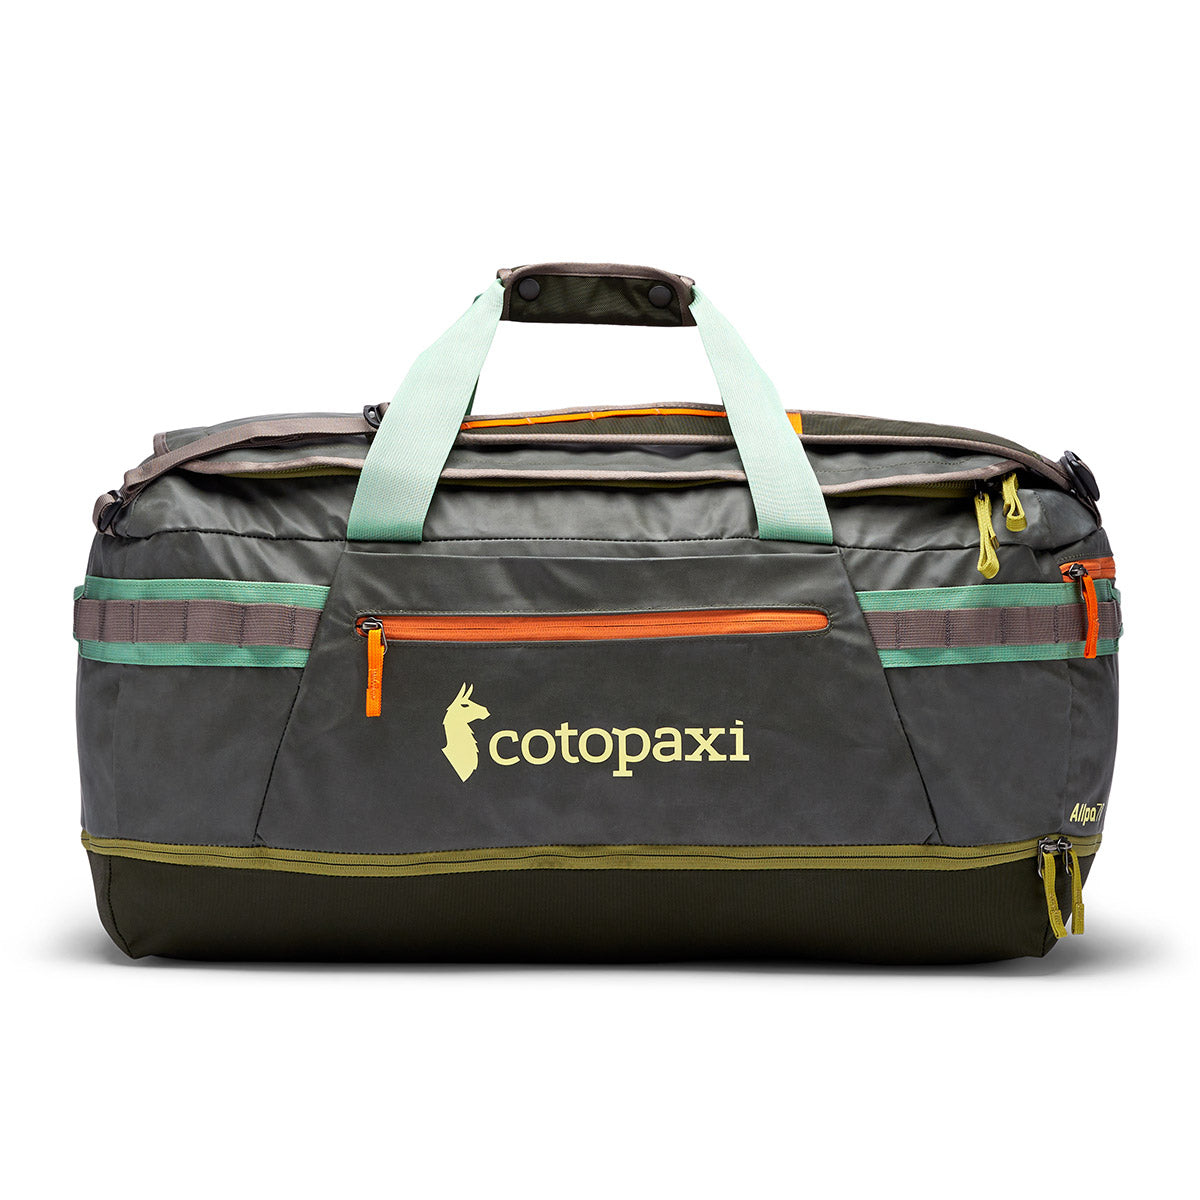 Cotopaxi Allpa 70L Duffel Bag アルパ 70リットル ダッフル バッグ